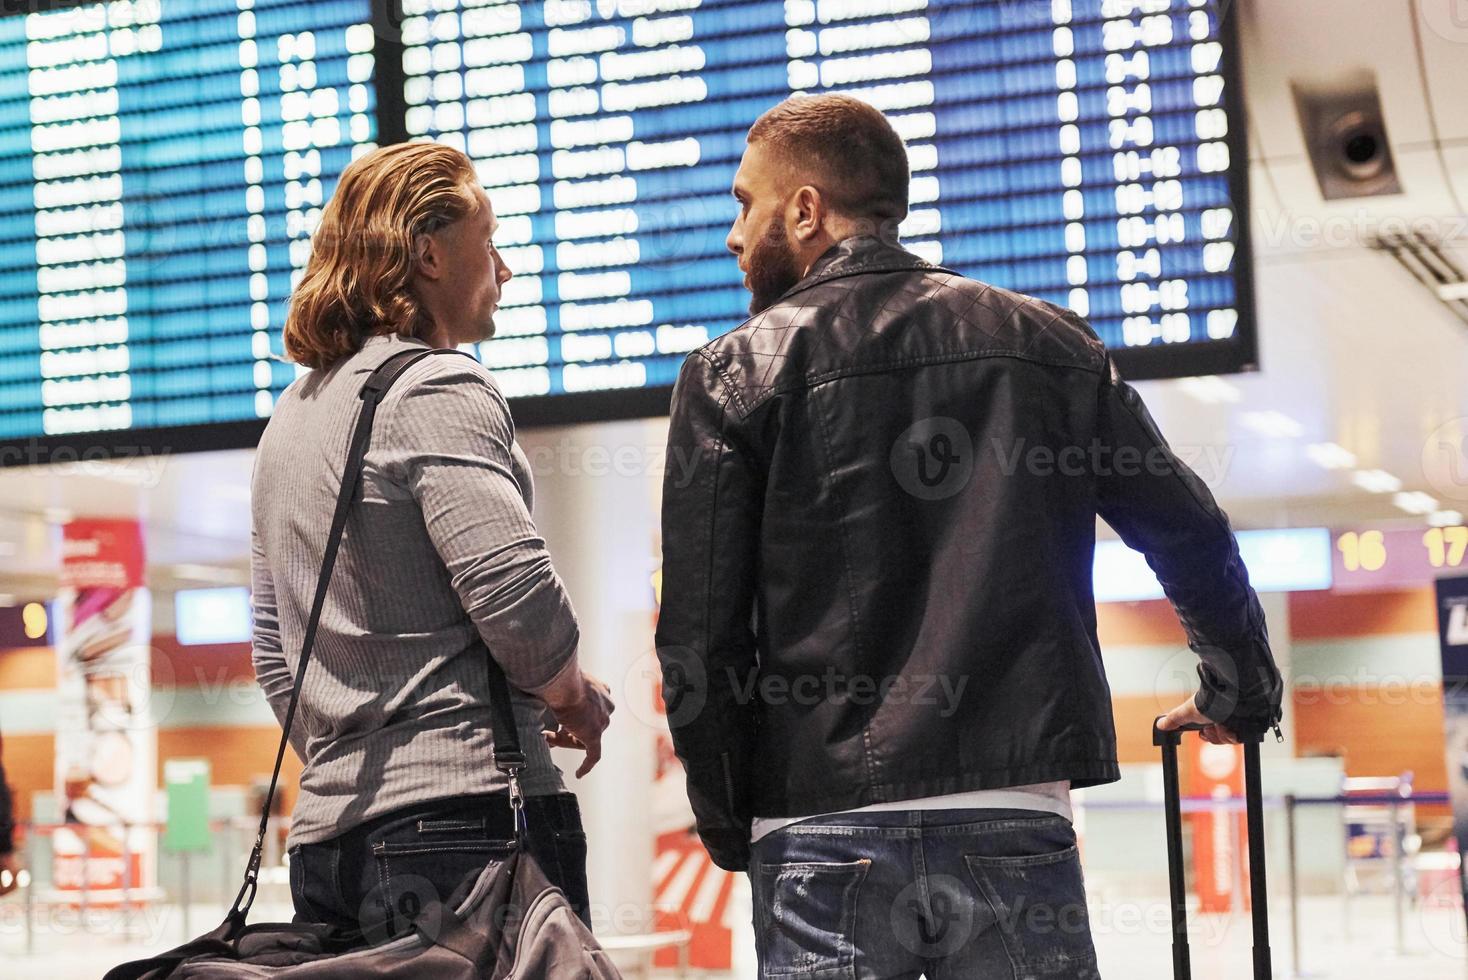 foto de dois camaradas situados no aeroporto perto do sistema de exibição de informações de voo